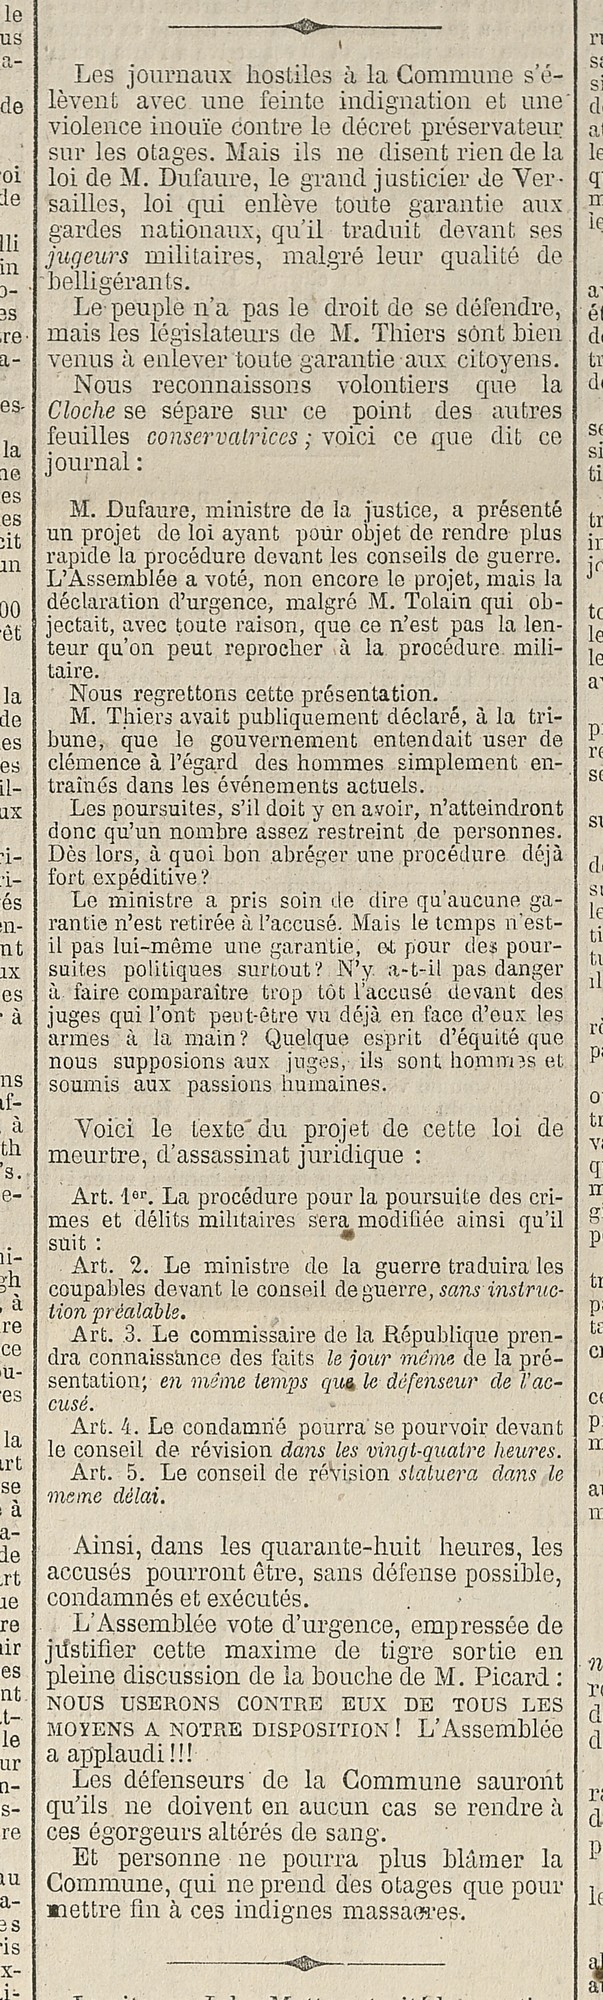 Décret des otages - Journal officiel n°99 du 9 avril 1871, Archives de Paris, ATLAS 144.